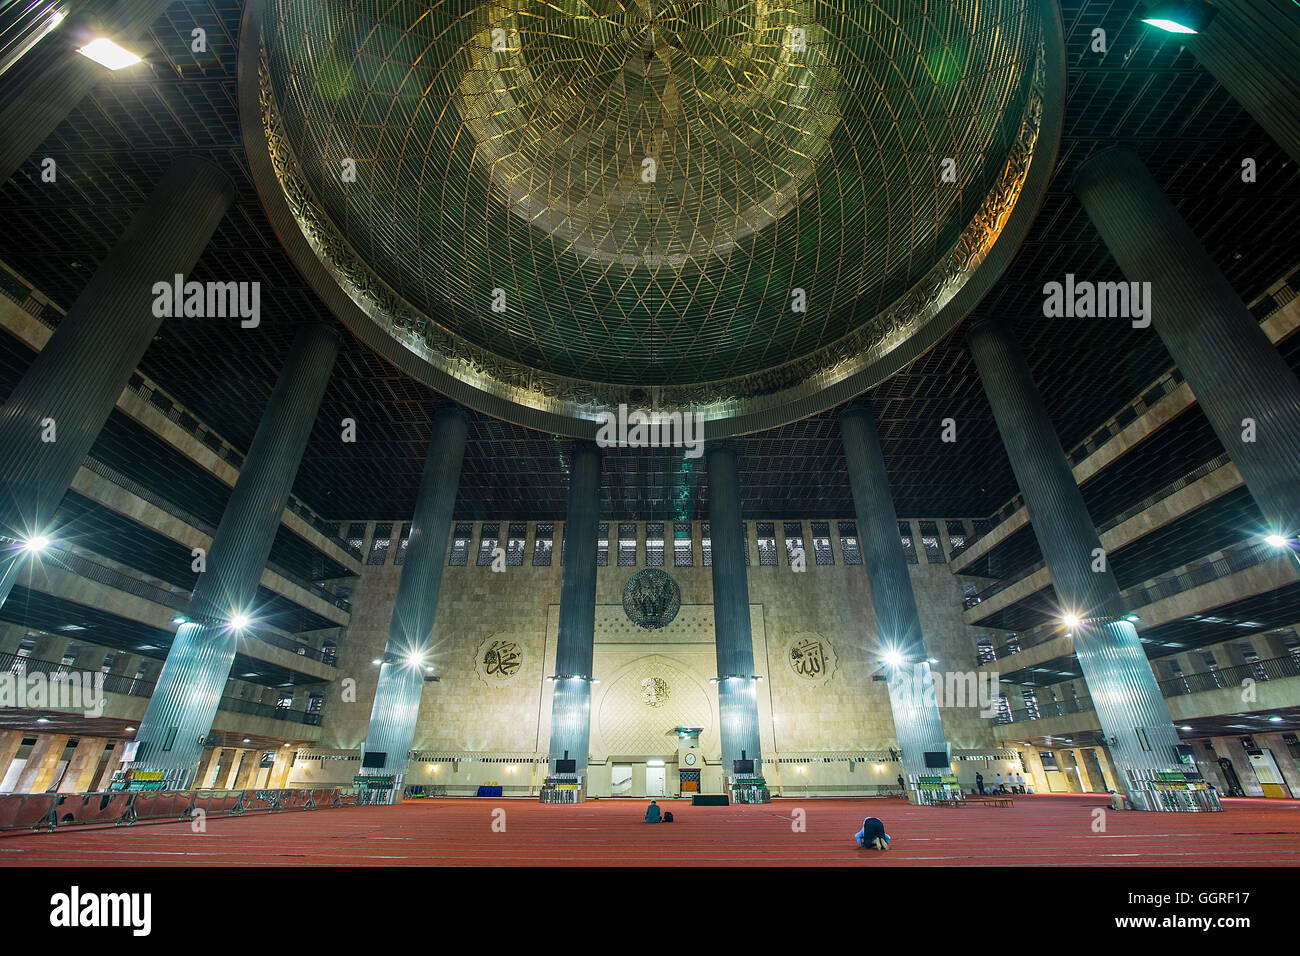 All'interno della Moschea Istiqlal, o Masjid Istiqlal, (Moschea di Indipendenza) a Giacarta, la più grande moschea del Sud Est asiatico, Giacarta, Indonesia Foto Stock